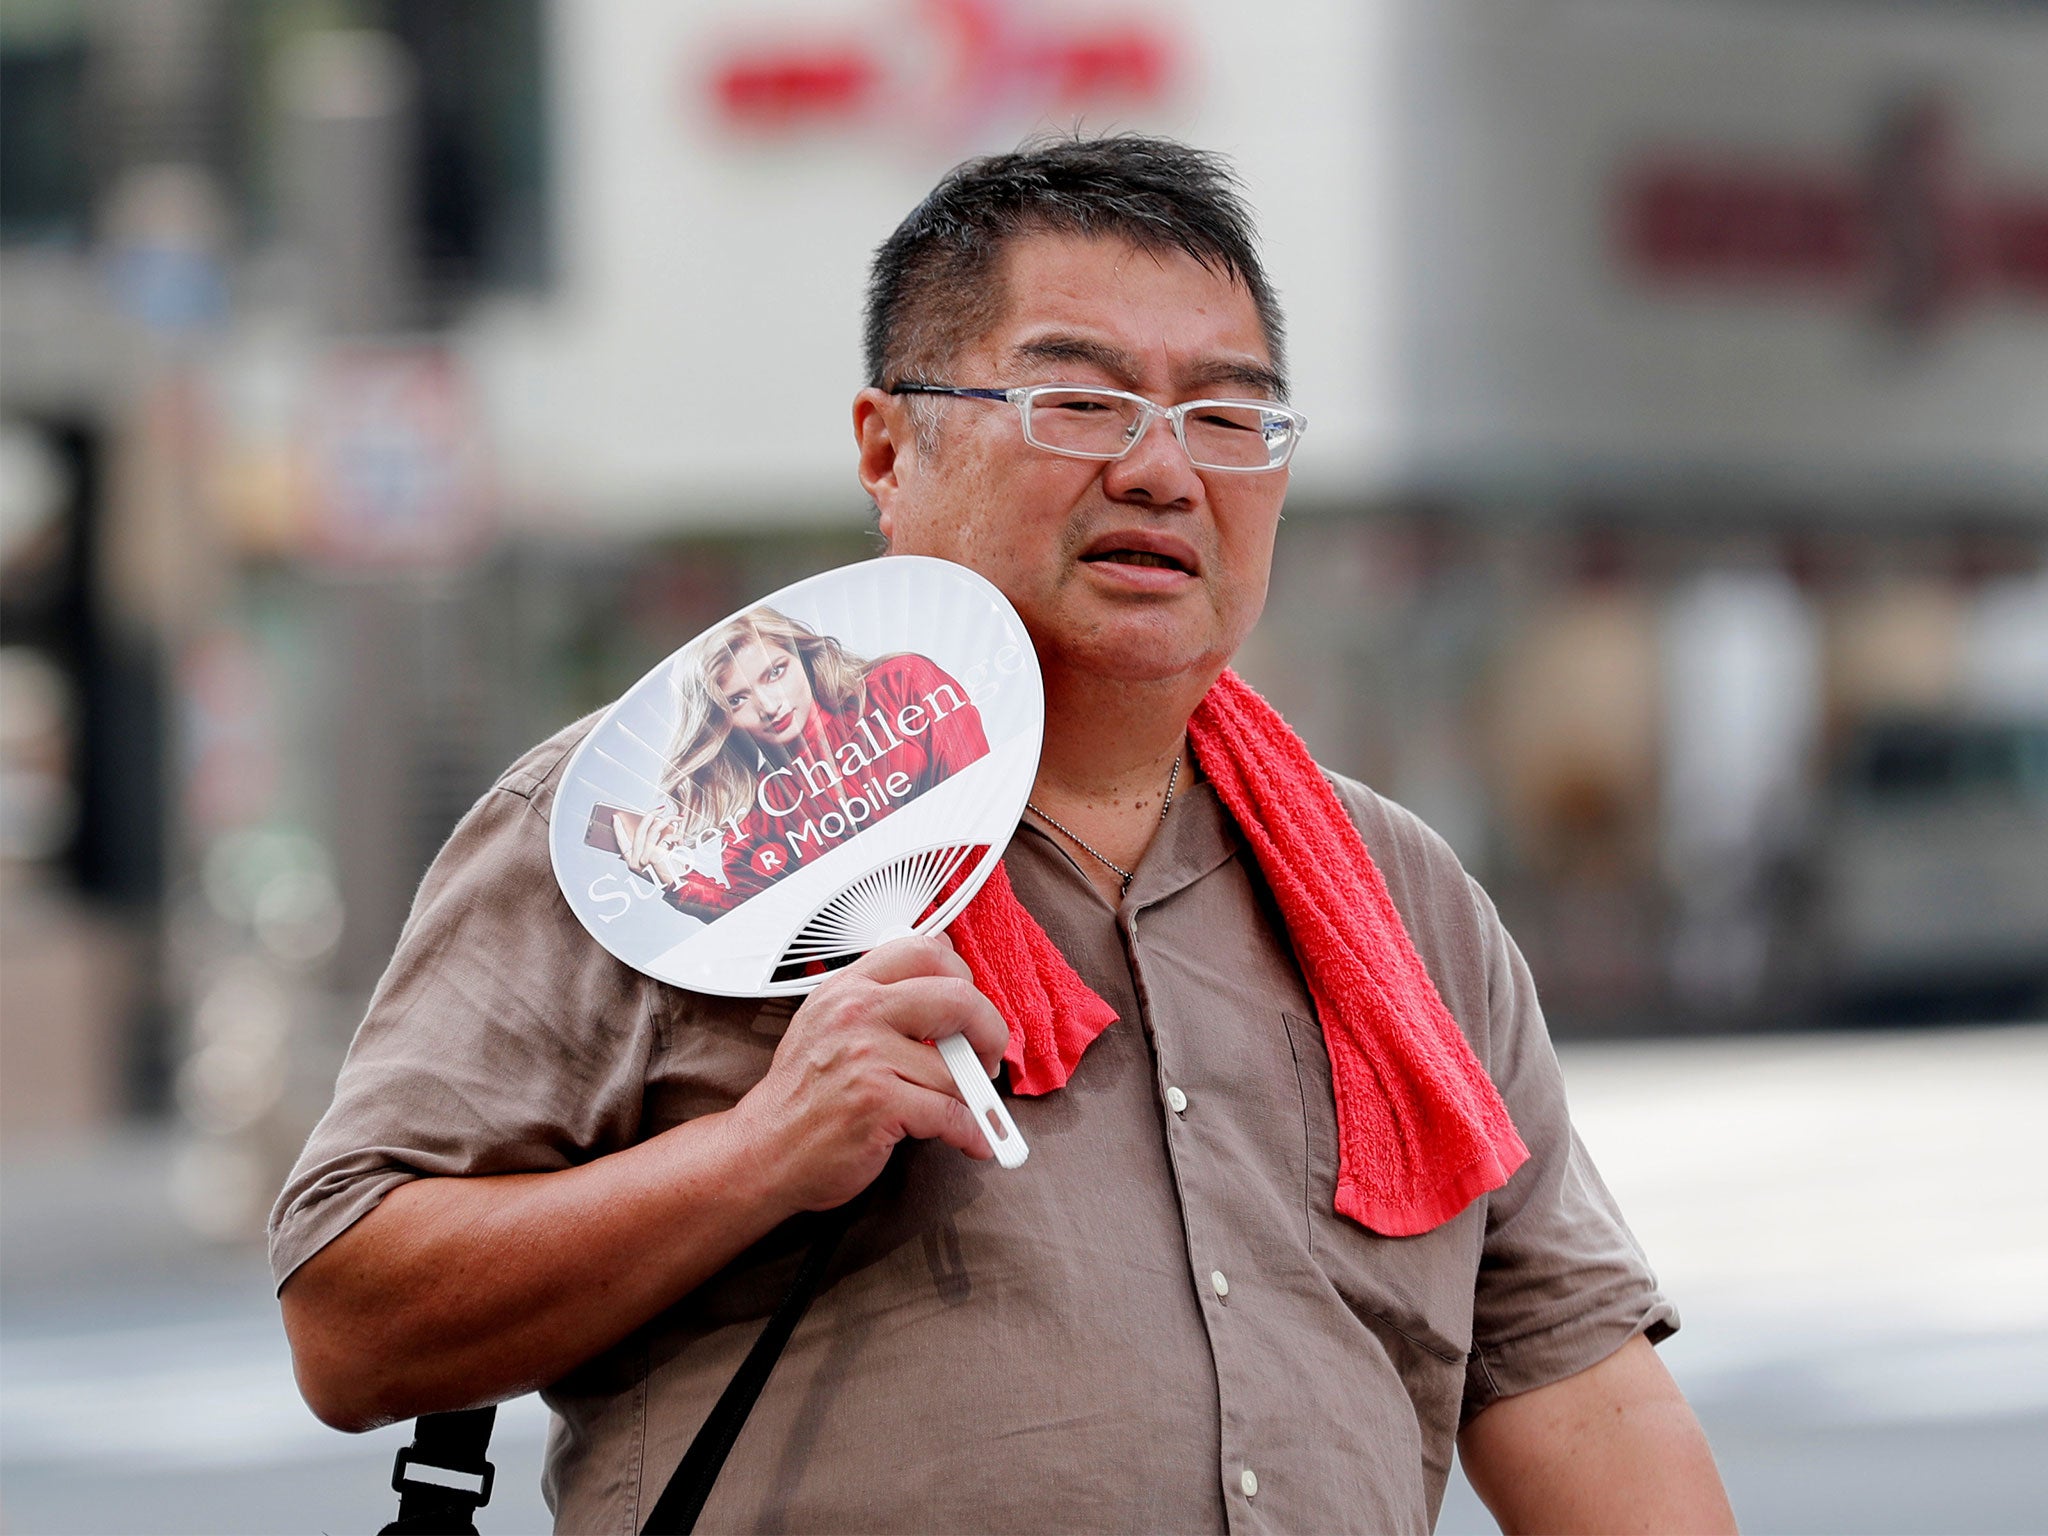 A man uses a fan as he walks on a street in Tokyo